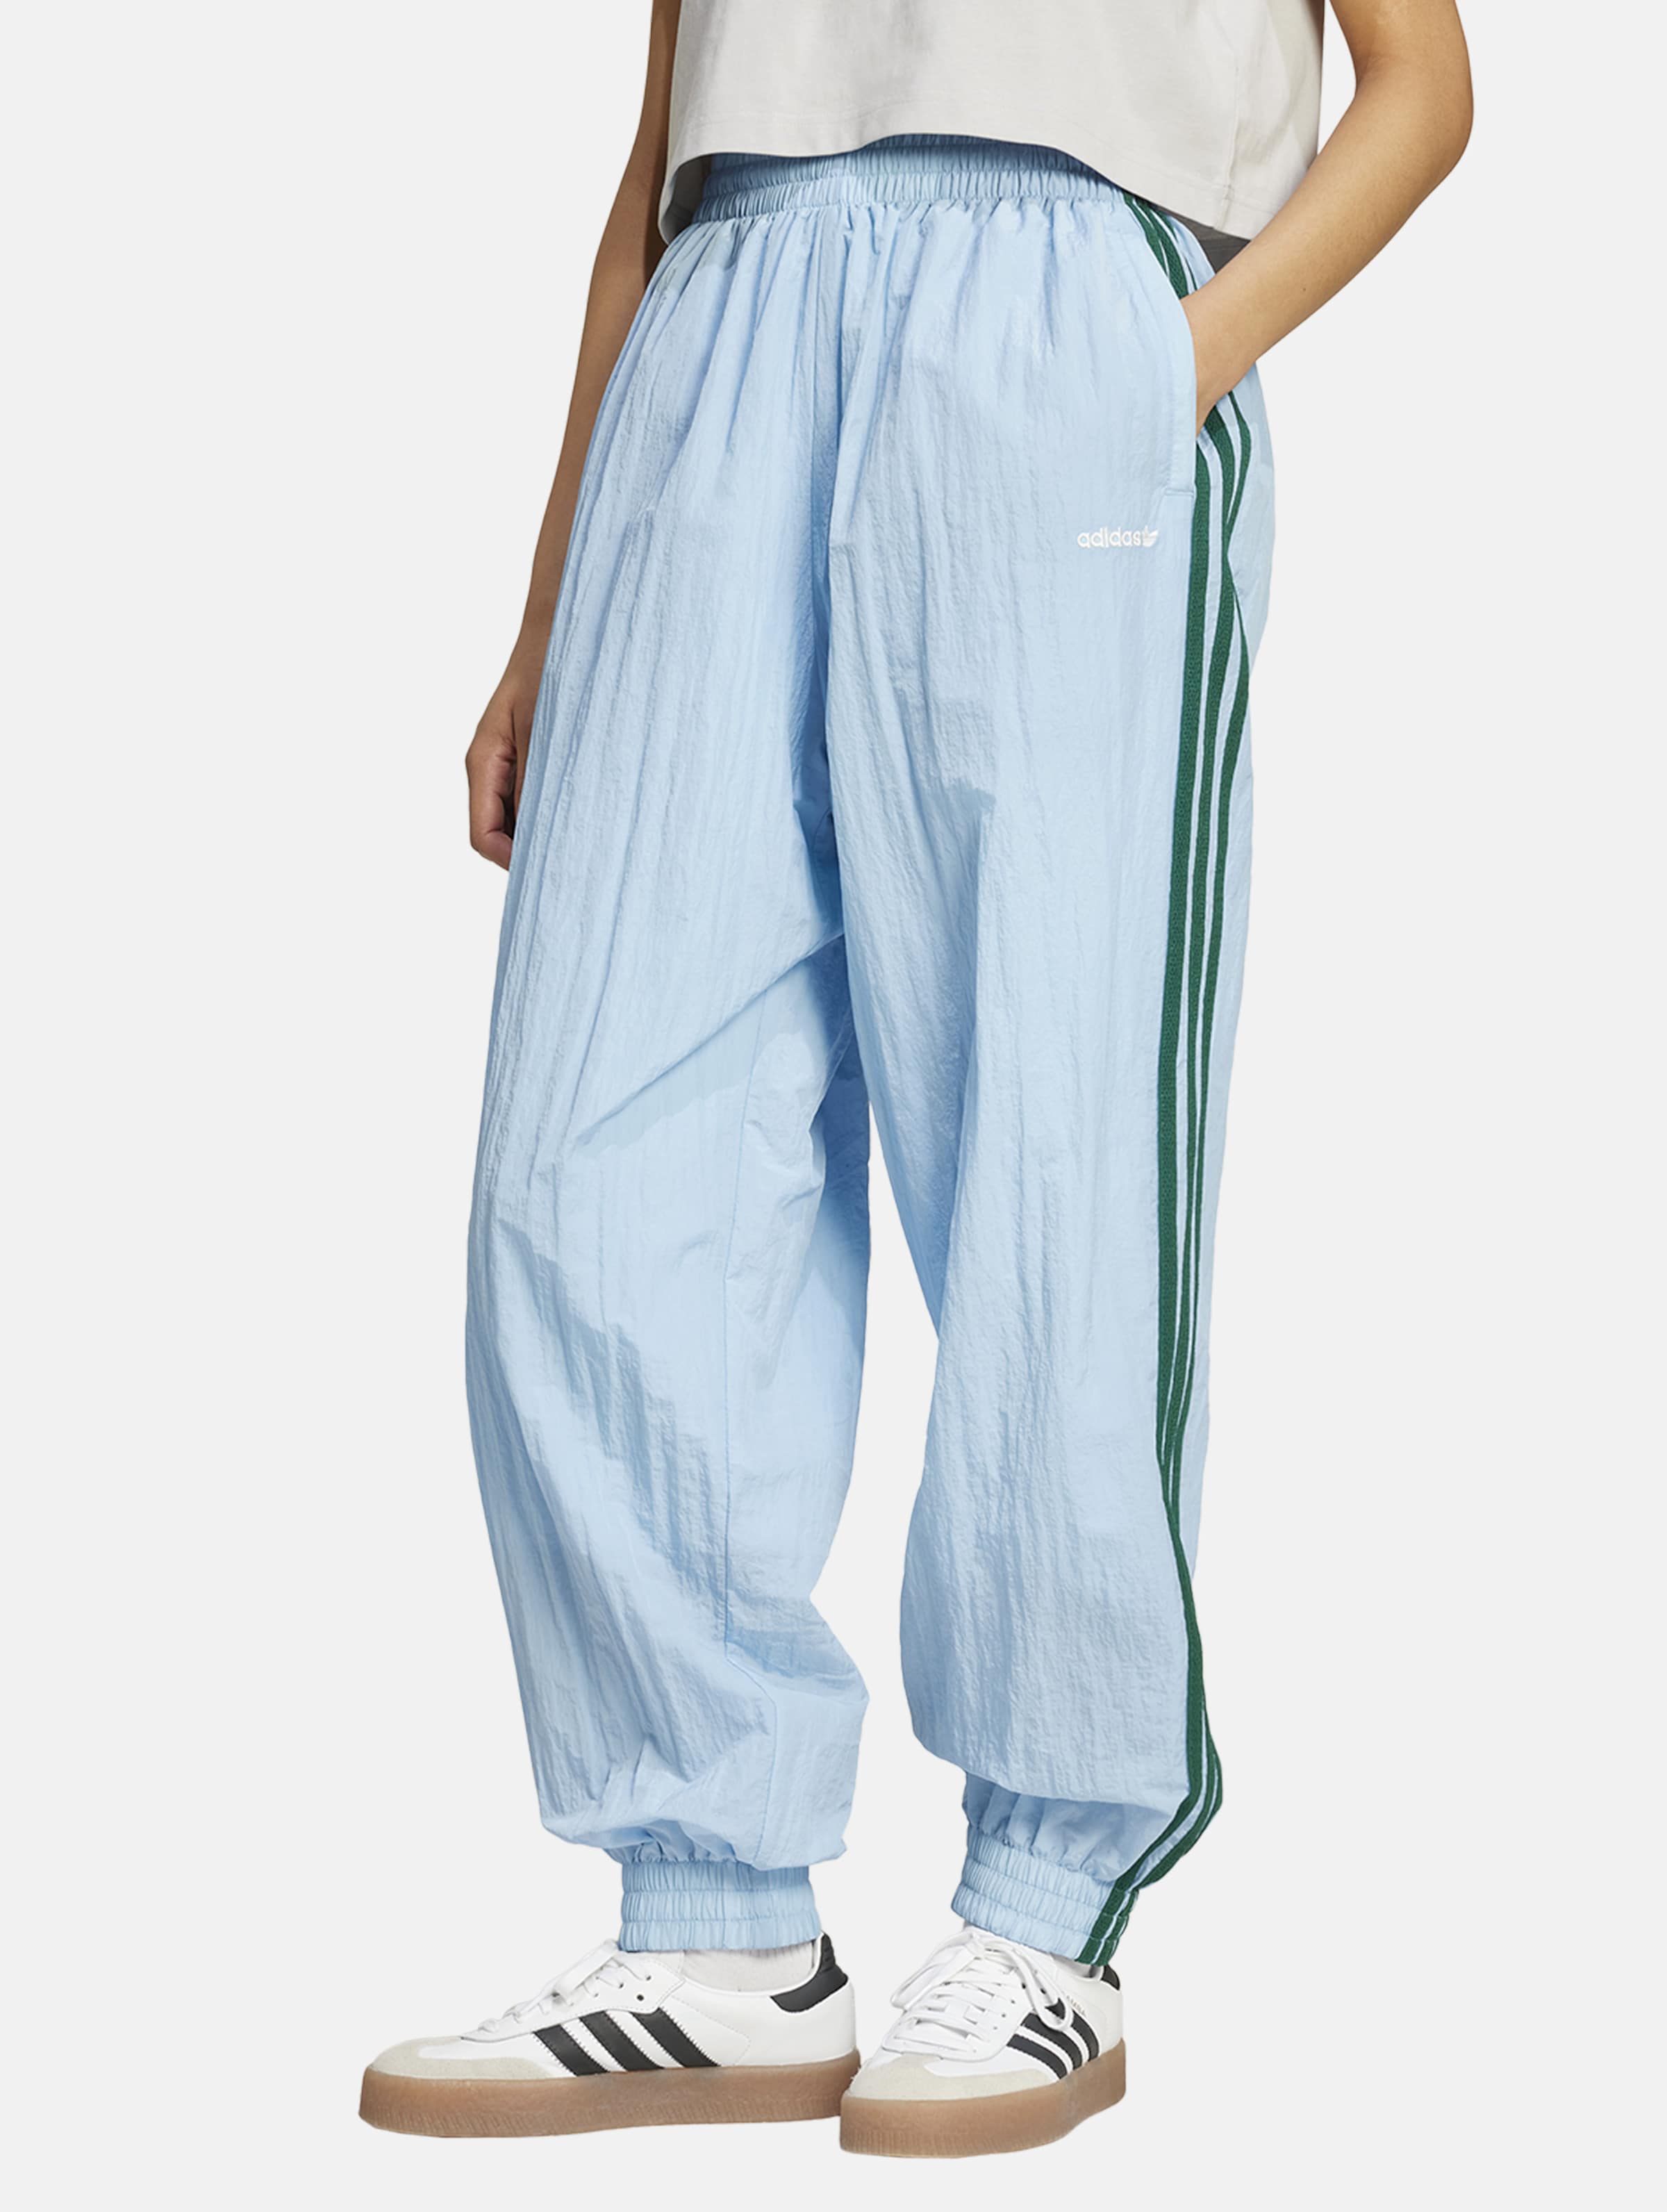 adidas Originals originals Jogginghosen Frauen,Unisex op kleur blauw, Maat XS